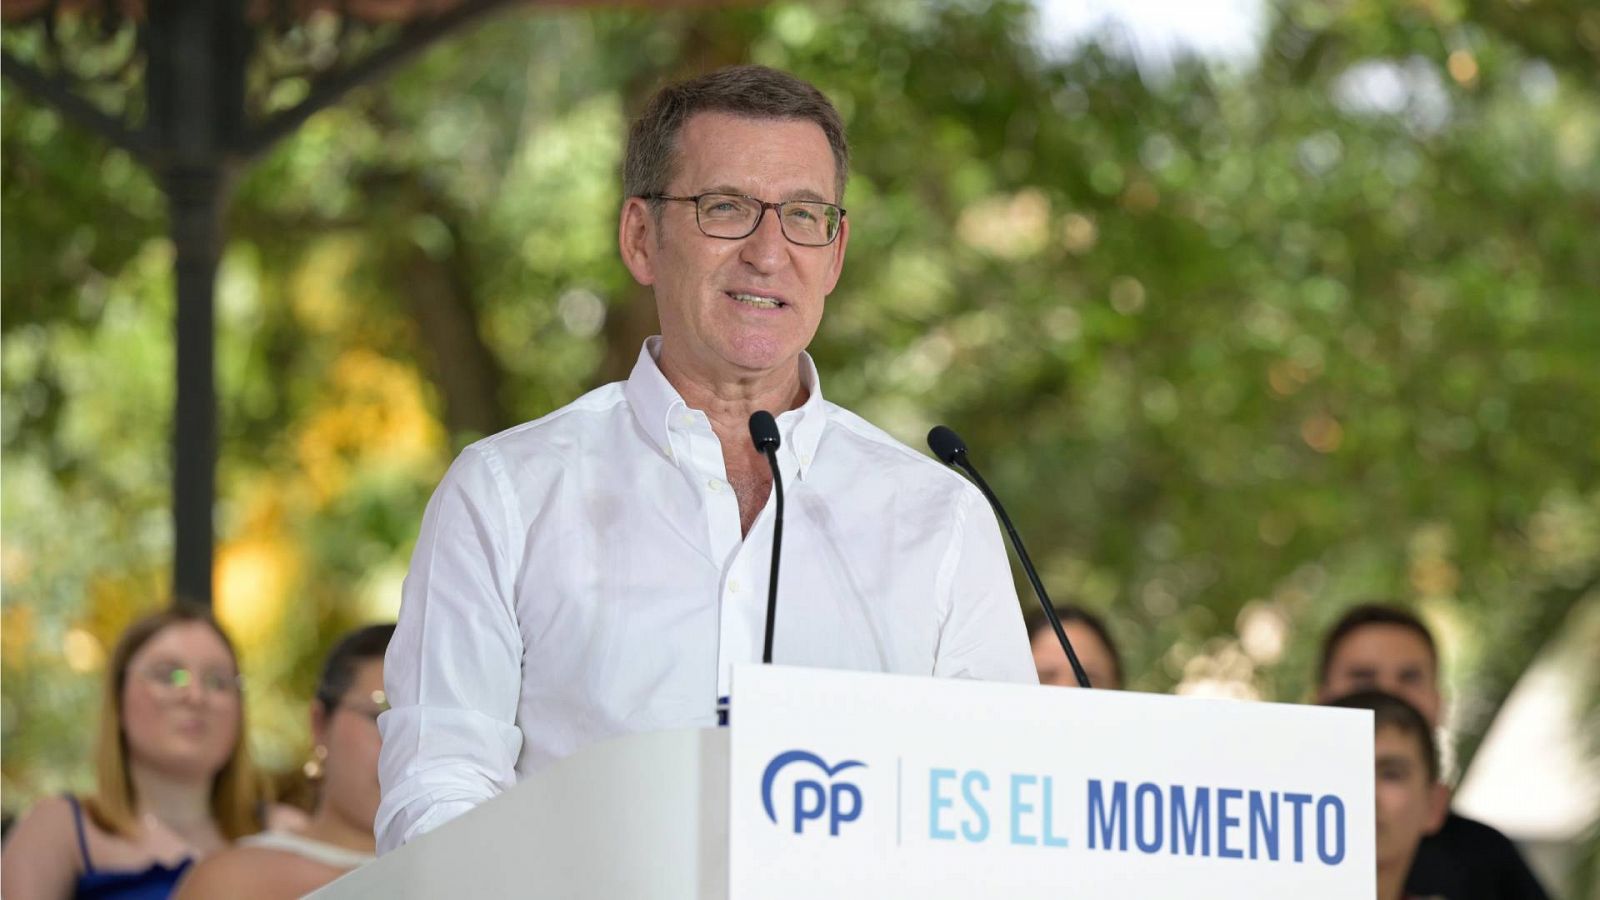 Elecciones 23J: Feijóo critica que Sánchez se "encerrarse" antes del debate "para nada"